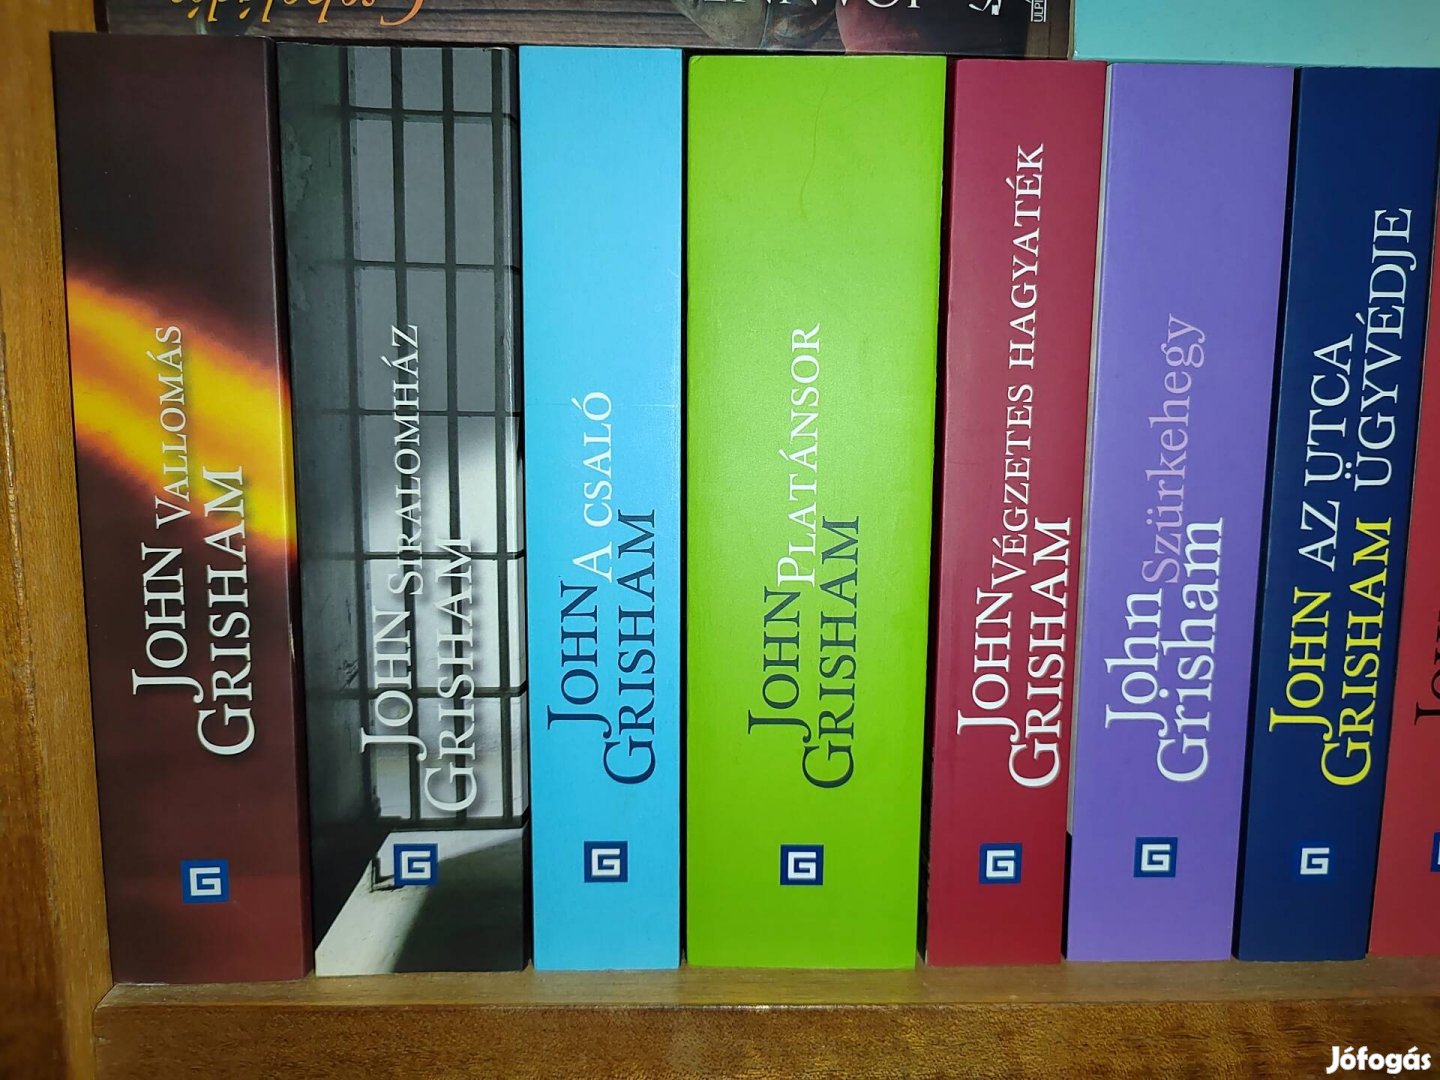 John Grisham könyvek